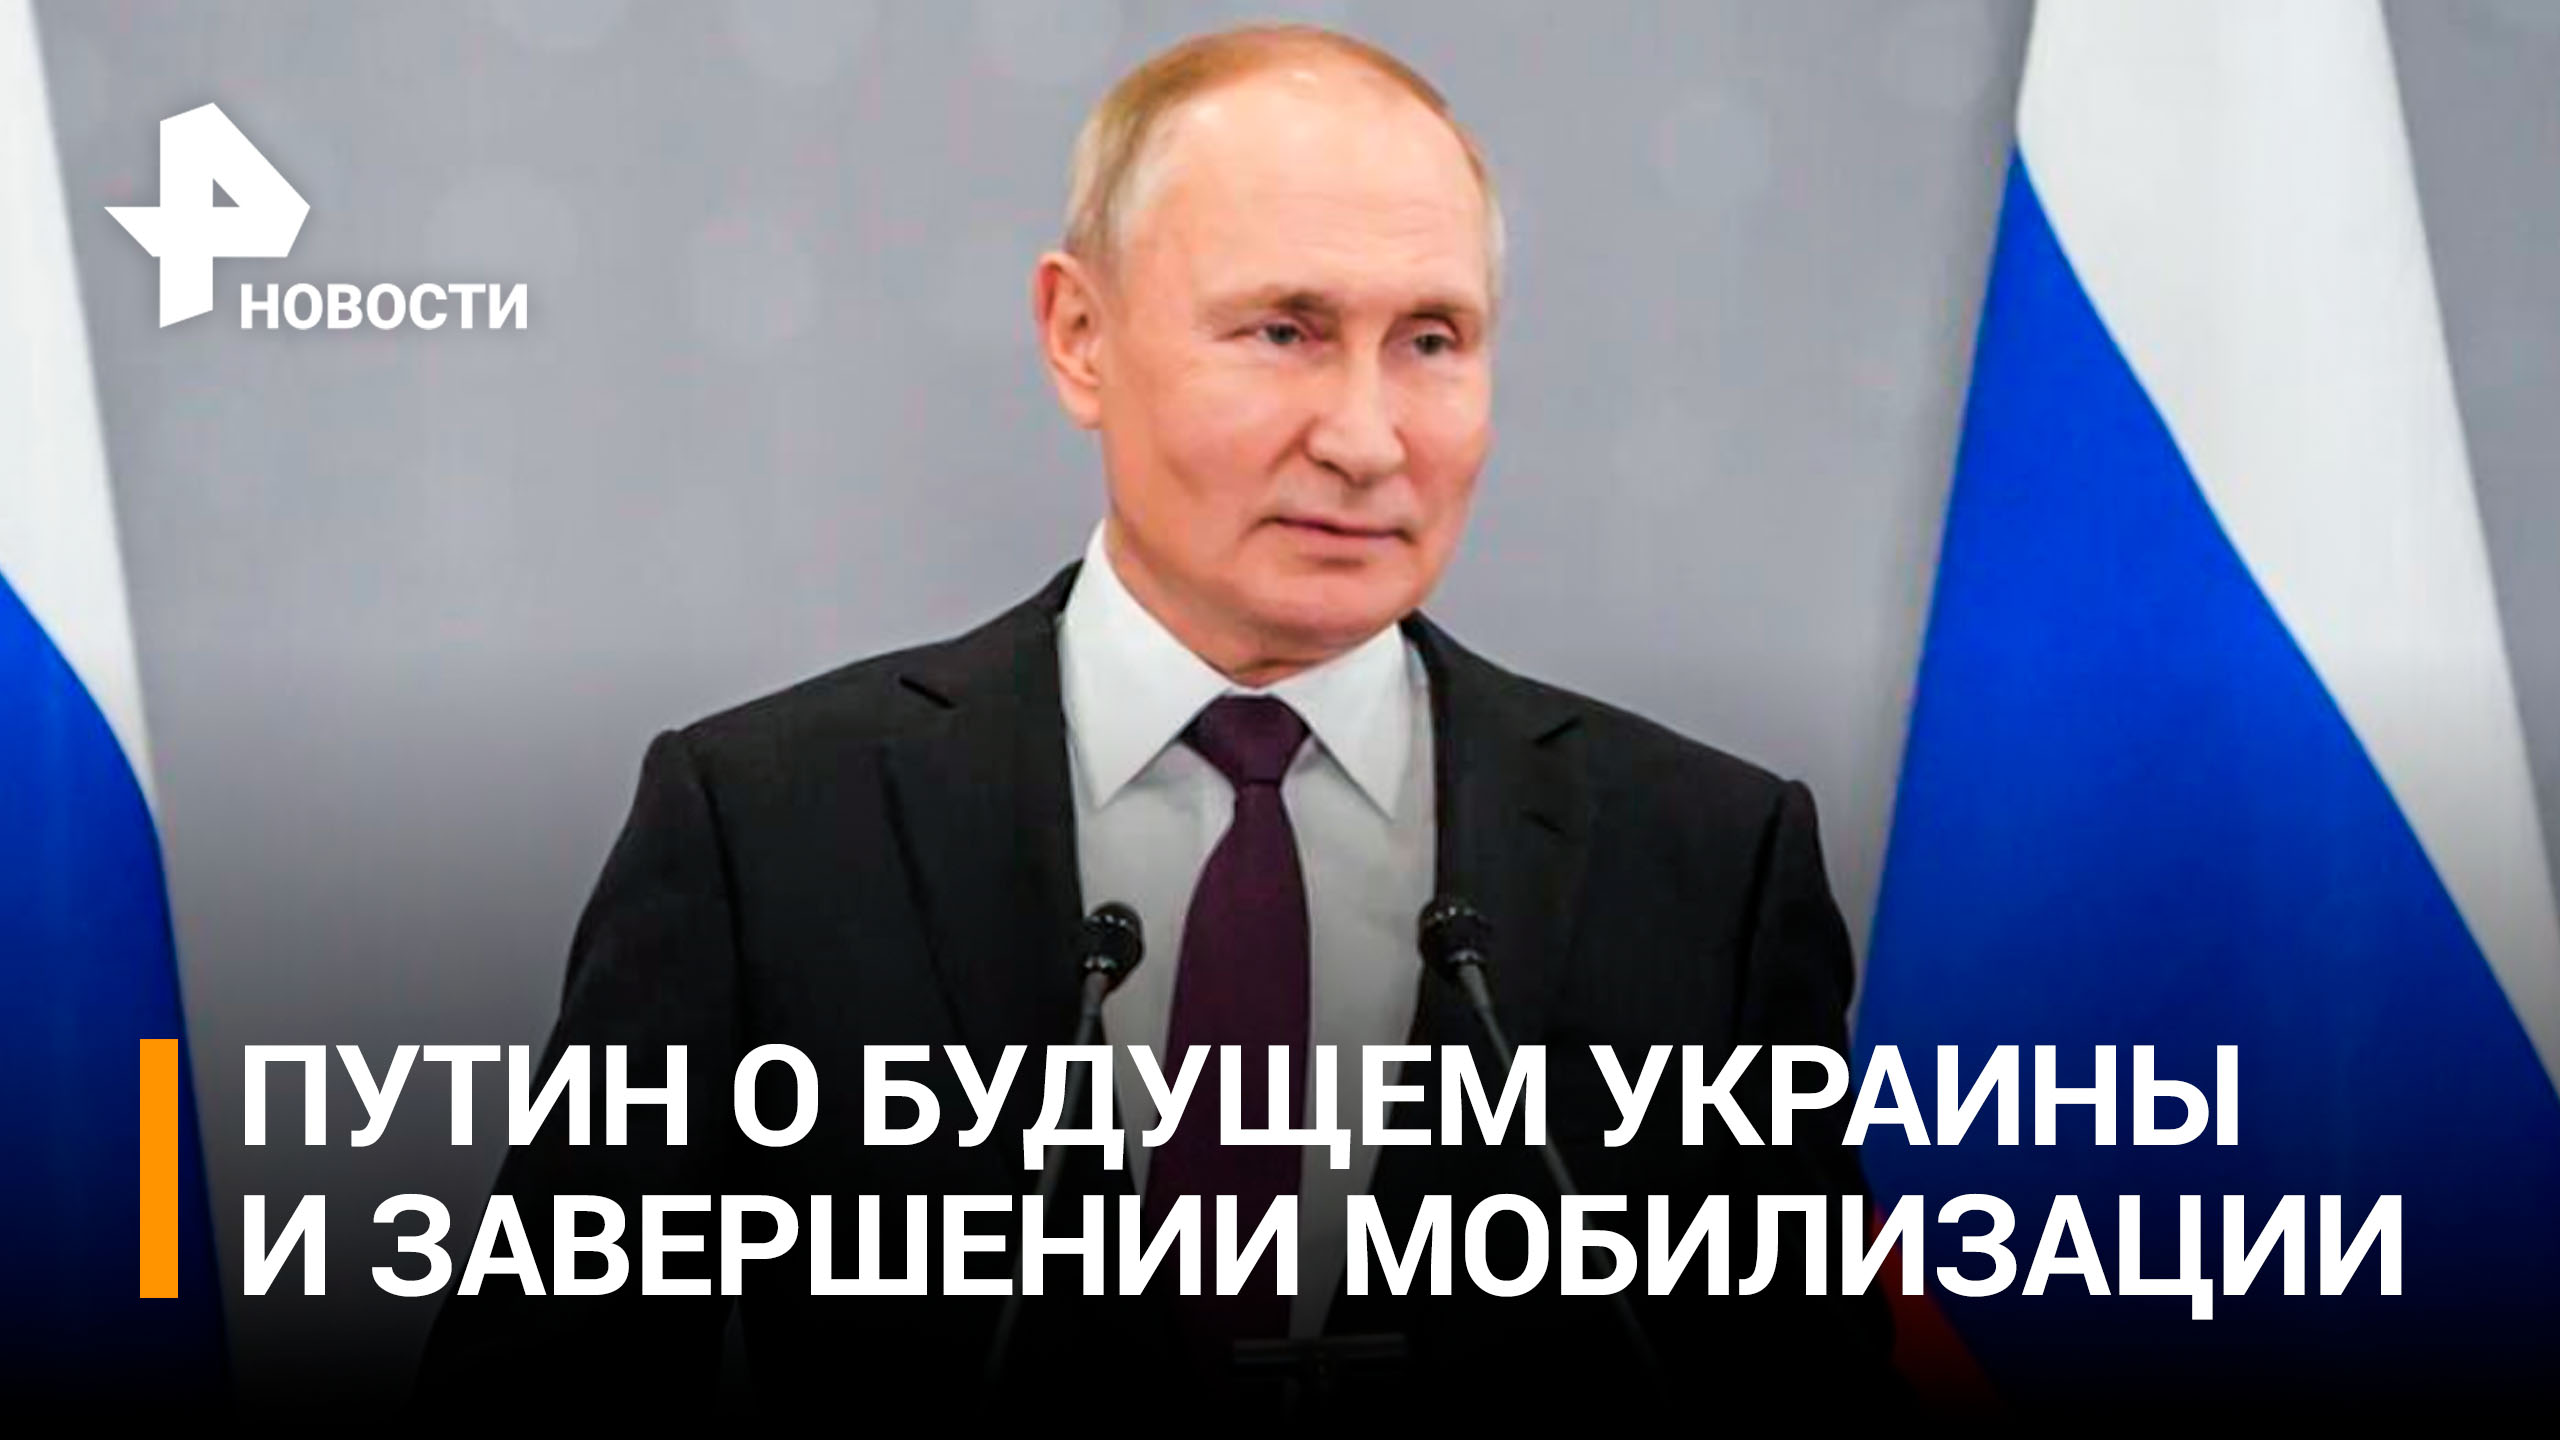 Завершение мобилизации и удары по Украине: что Путин сказал в Астане / РЕН Новости